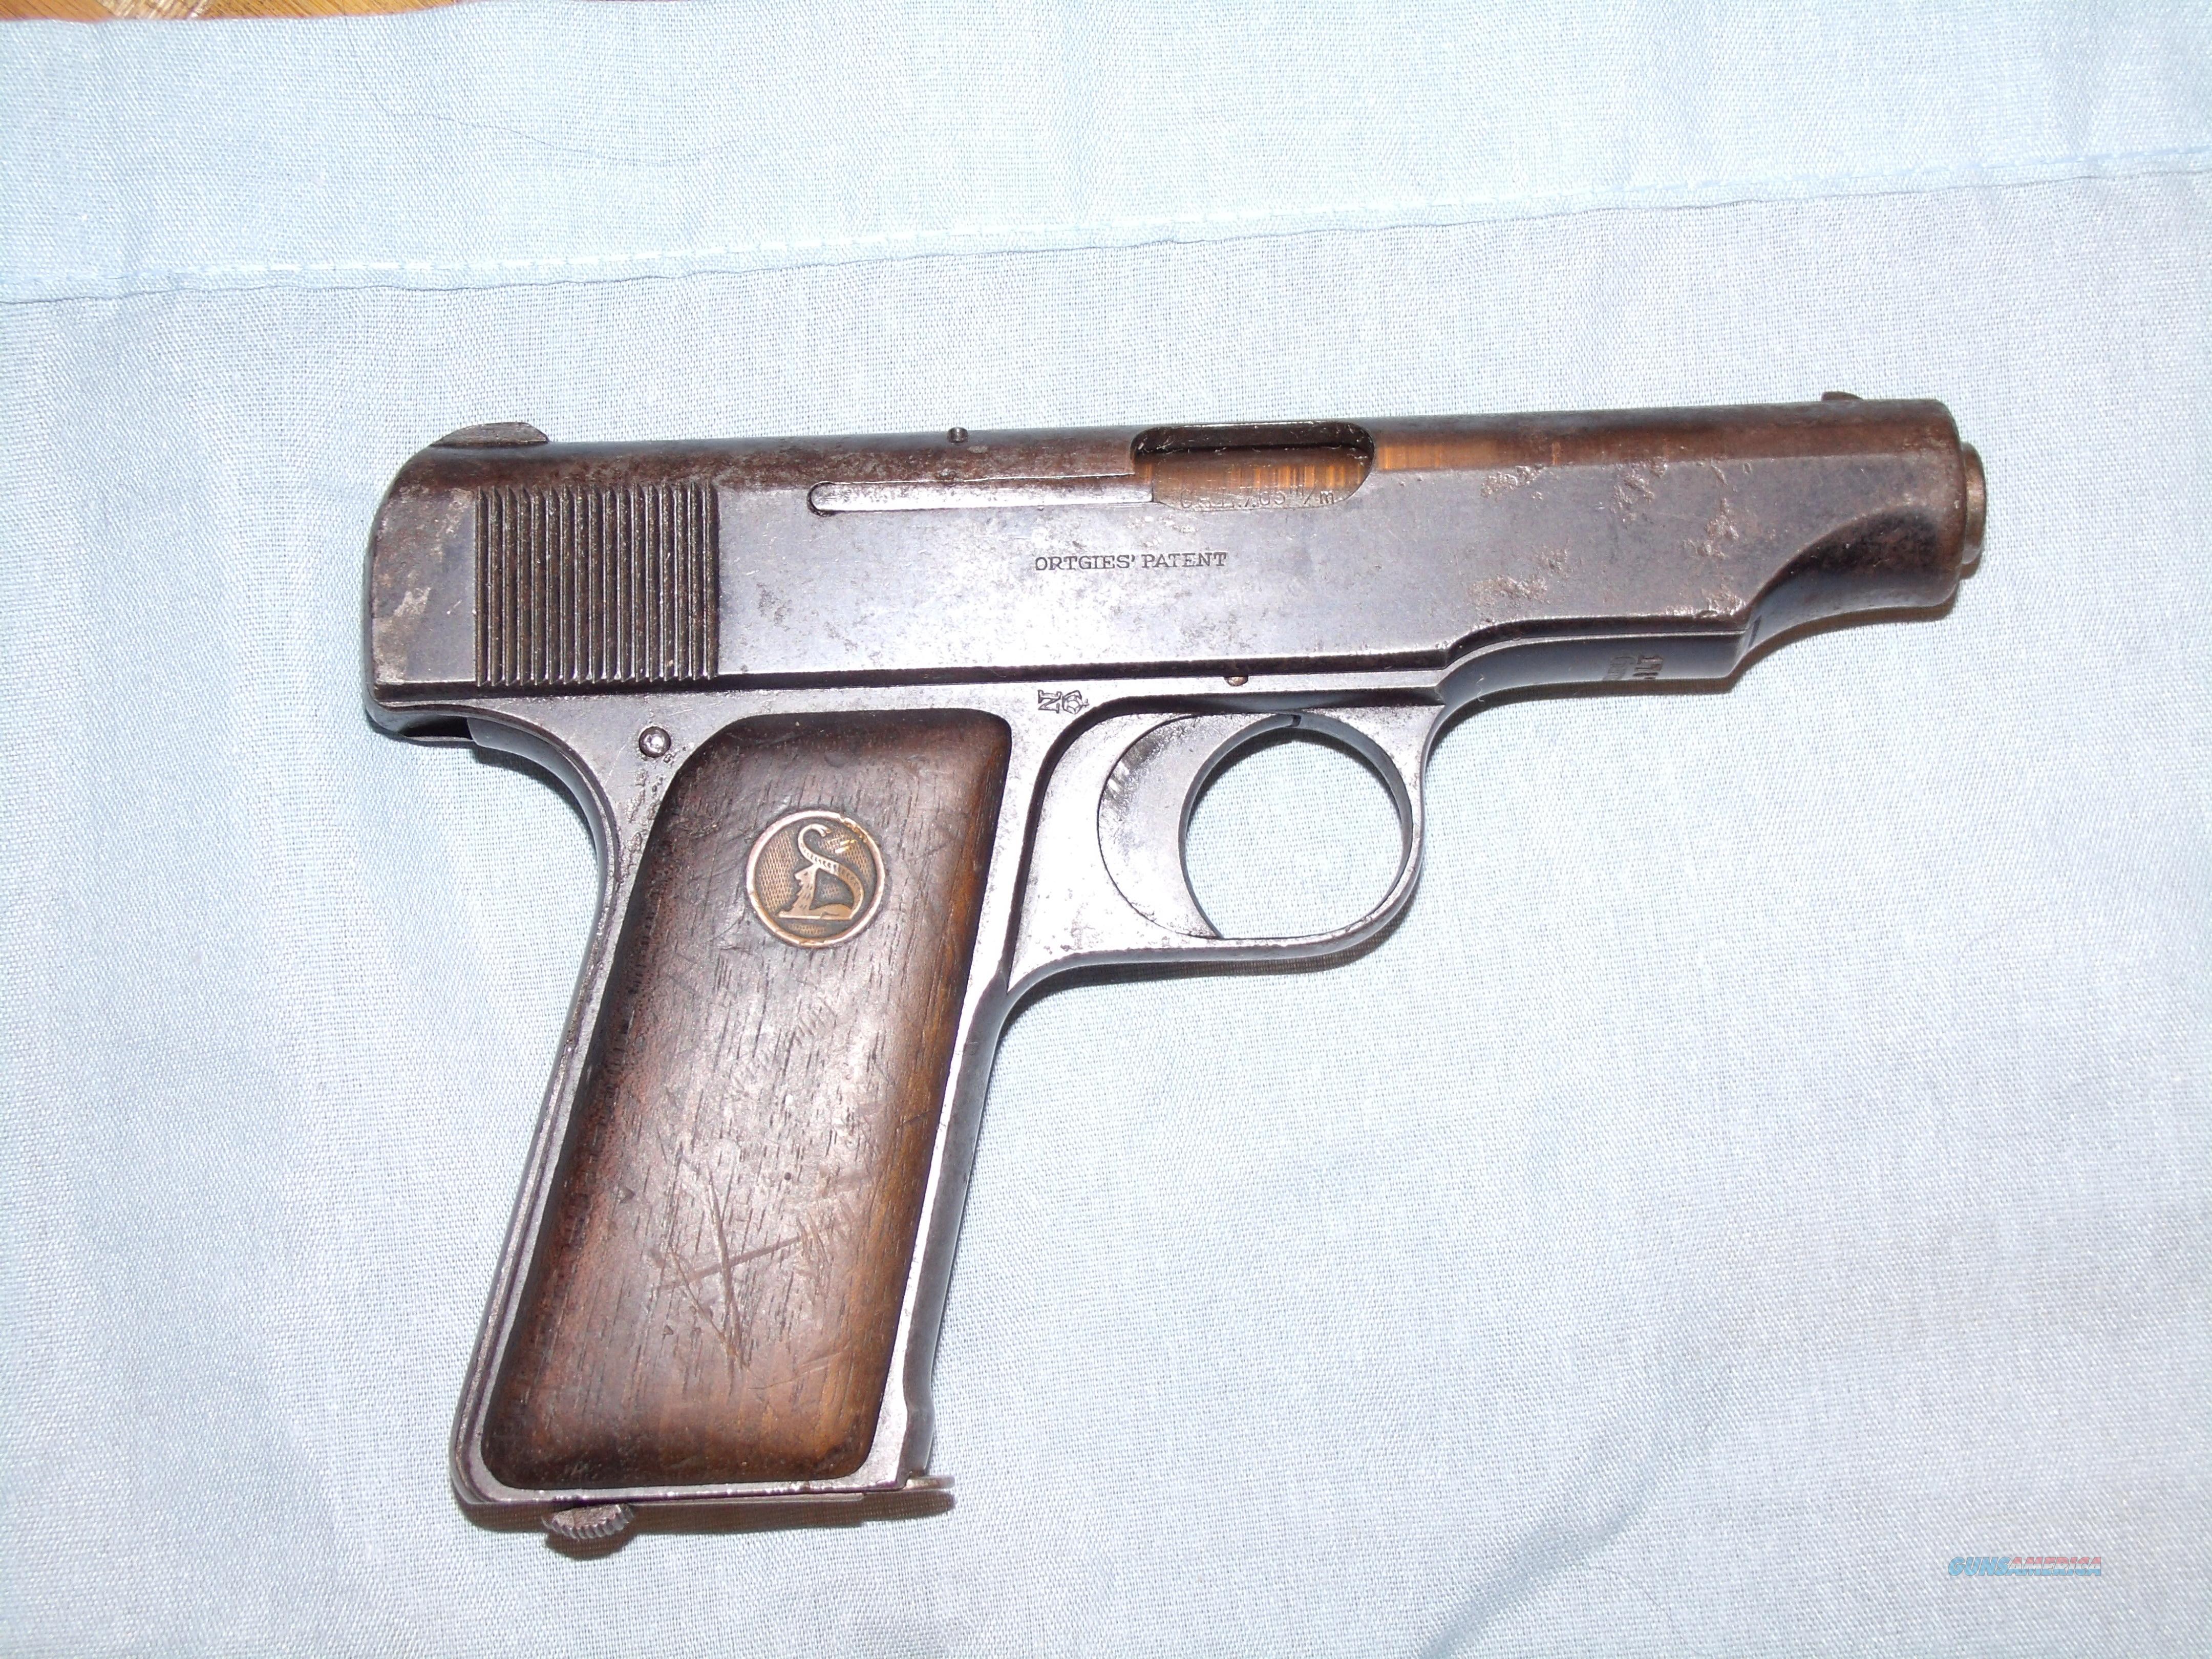 deutsche werke erfurt pistol price